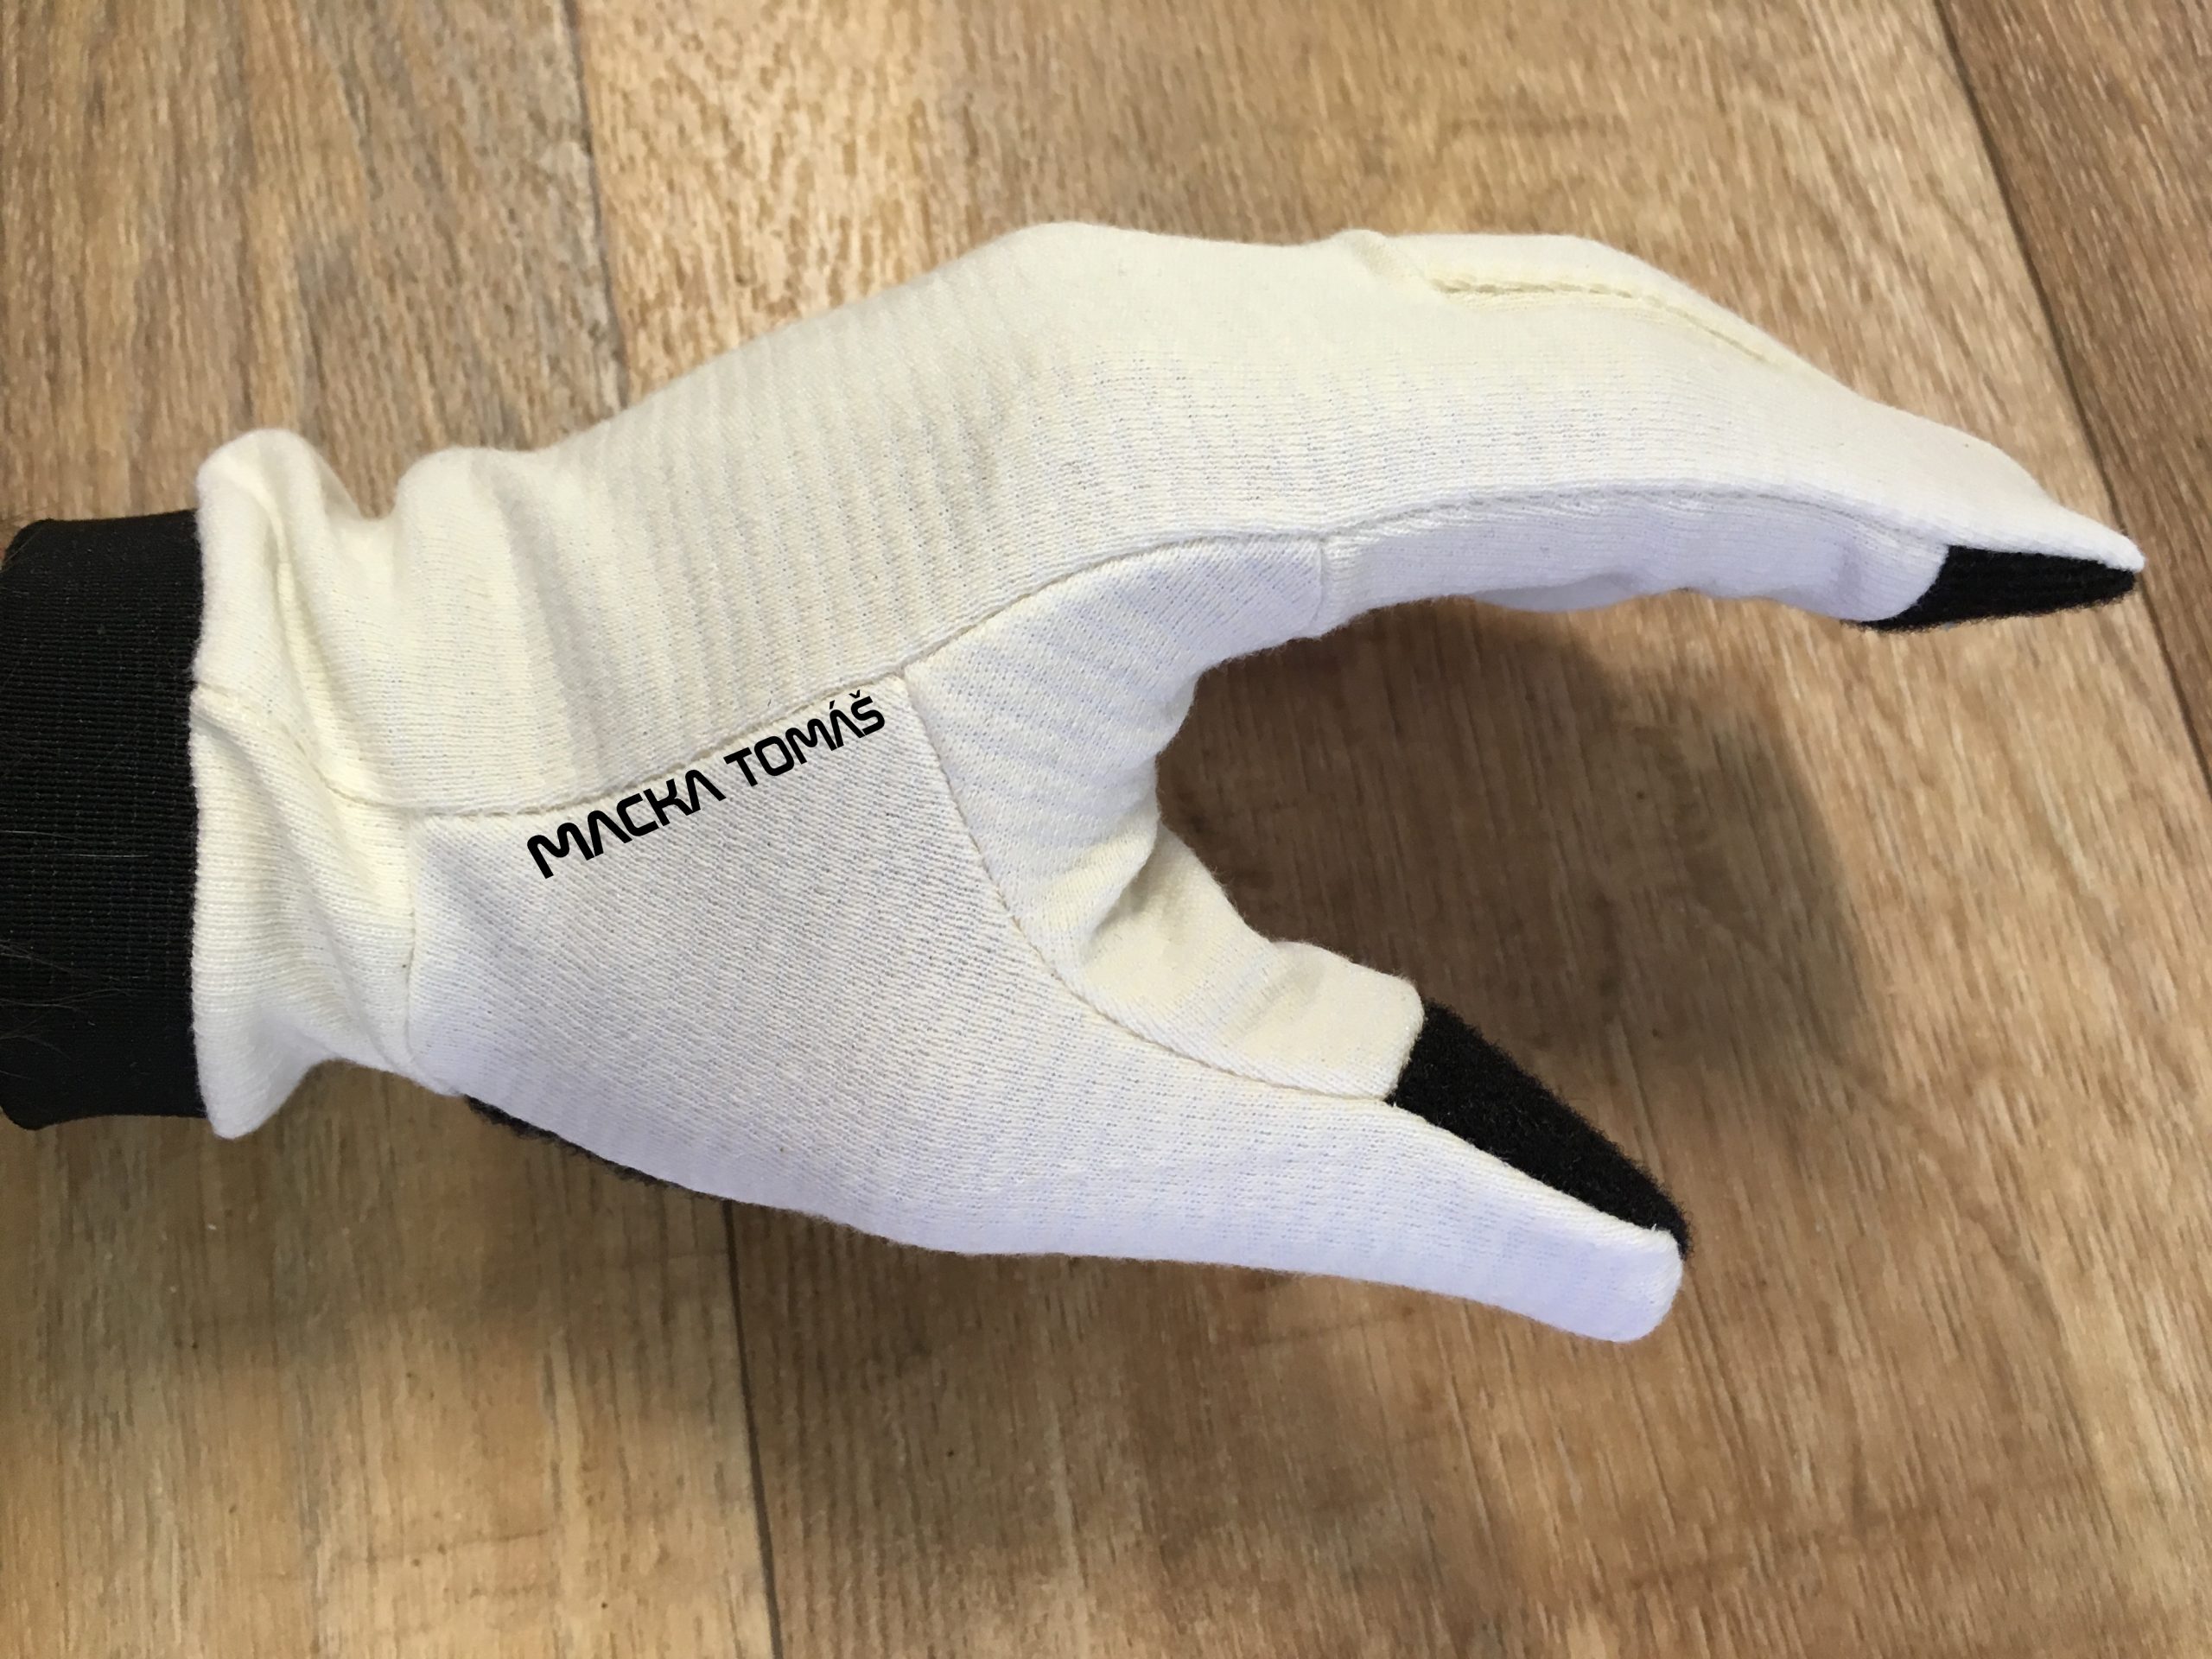 Výroba textilních rukavic Macka Tomáš